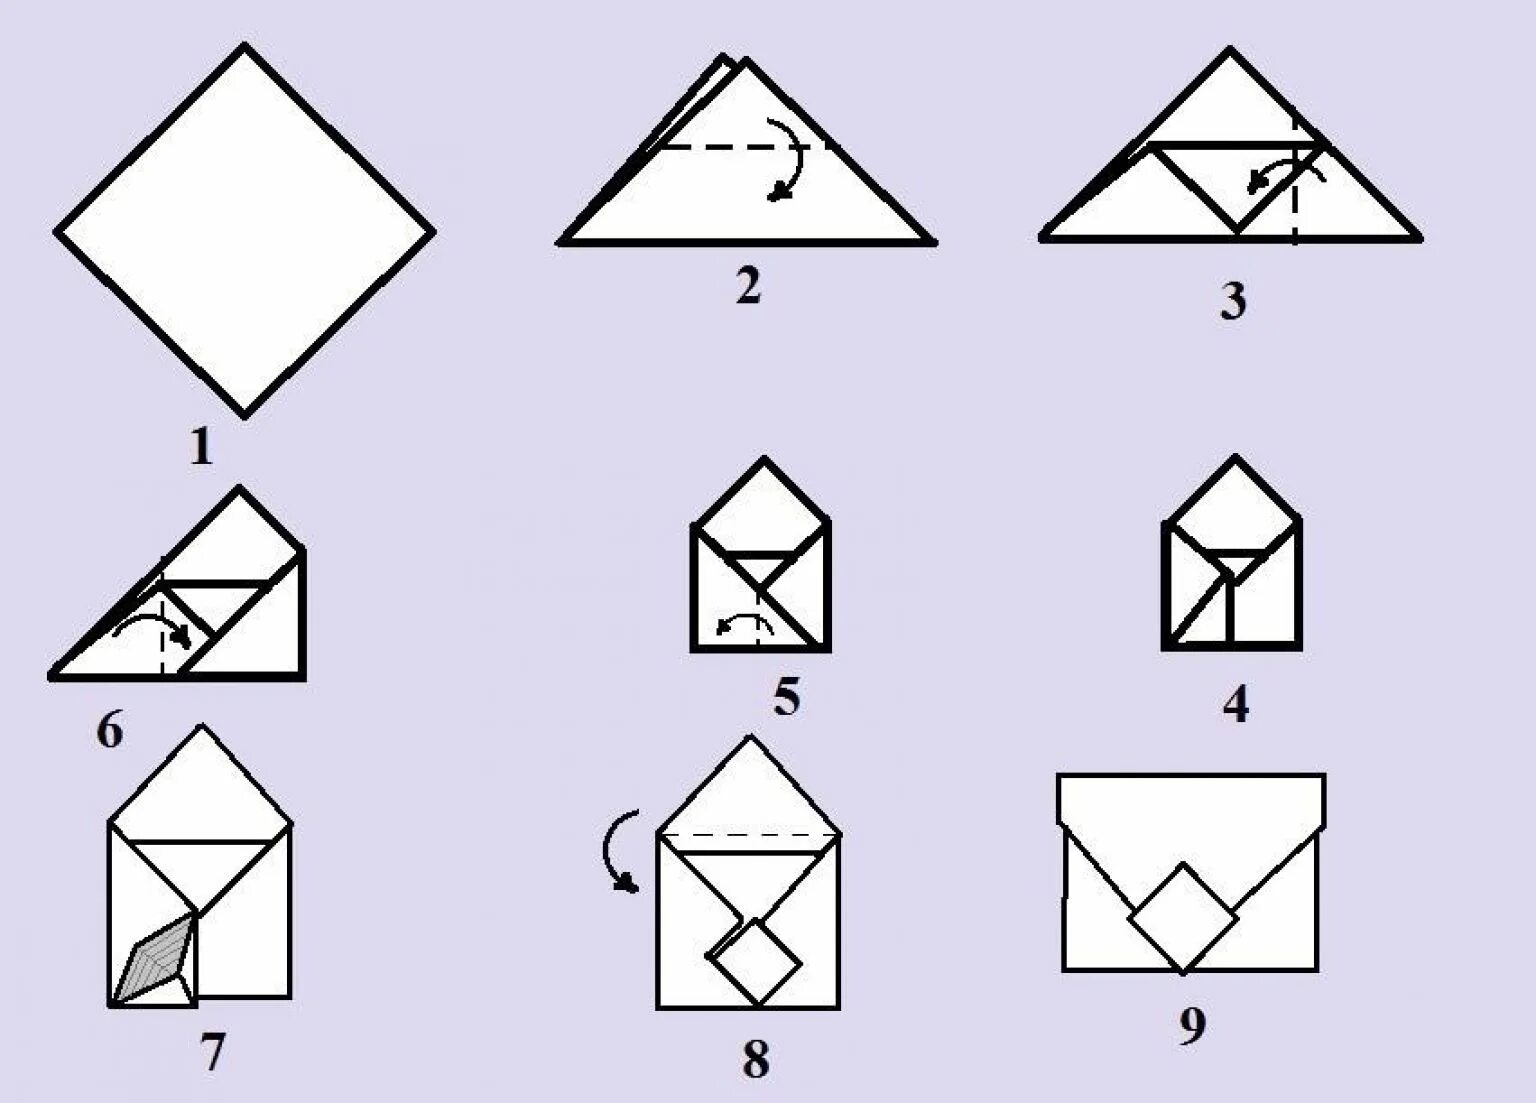 Письмо конверт из бумаги а4. Как сложить конвертик из бумаги а4. Как сложить конверт из листа бумаги а4. Как сложить конверт из а4. Как сложить конверт из бумаги а4 без клея.